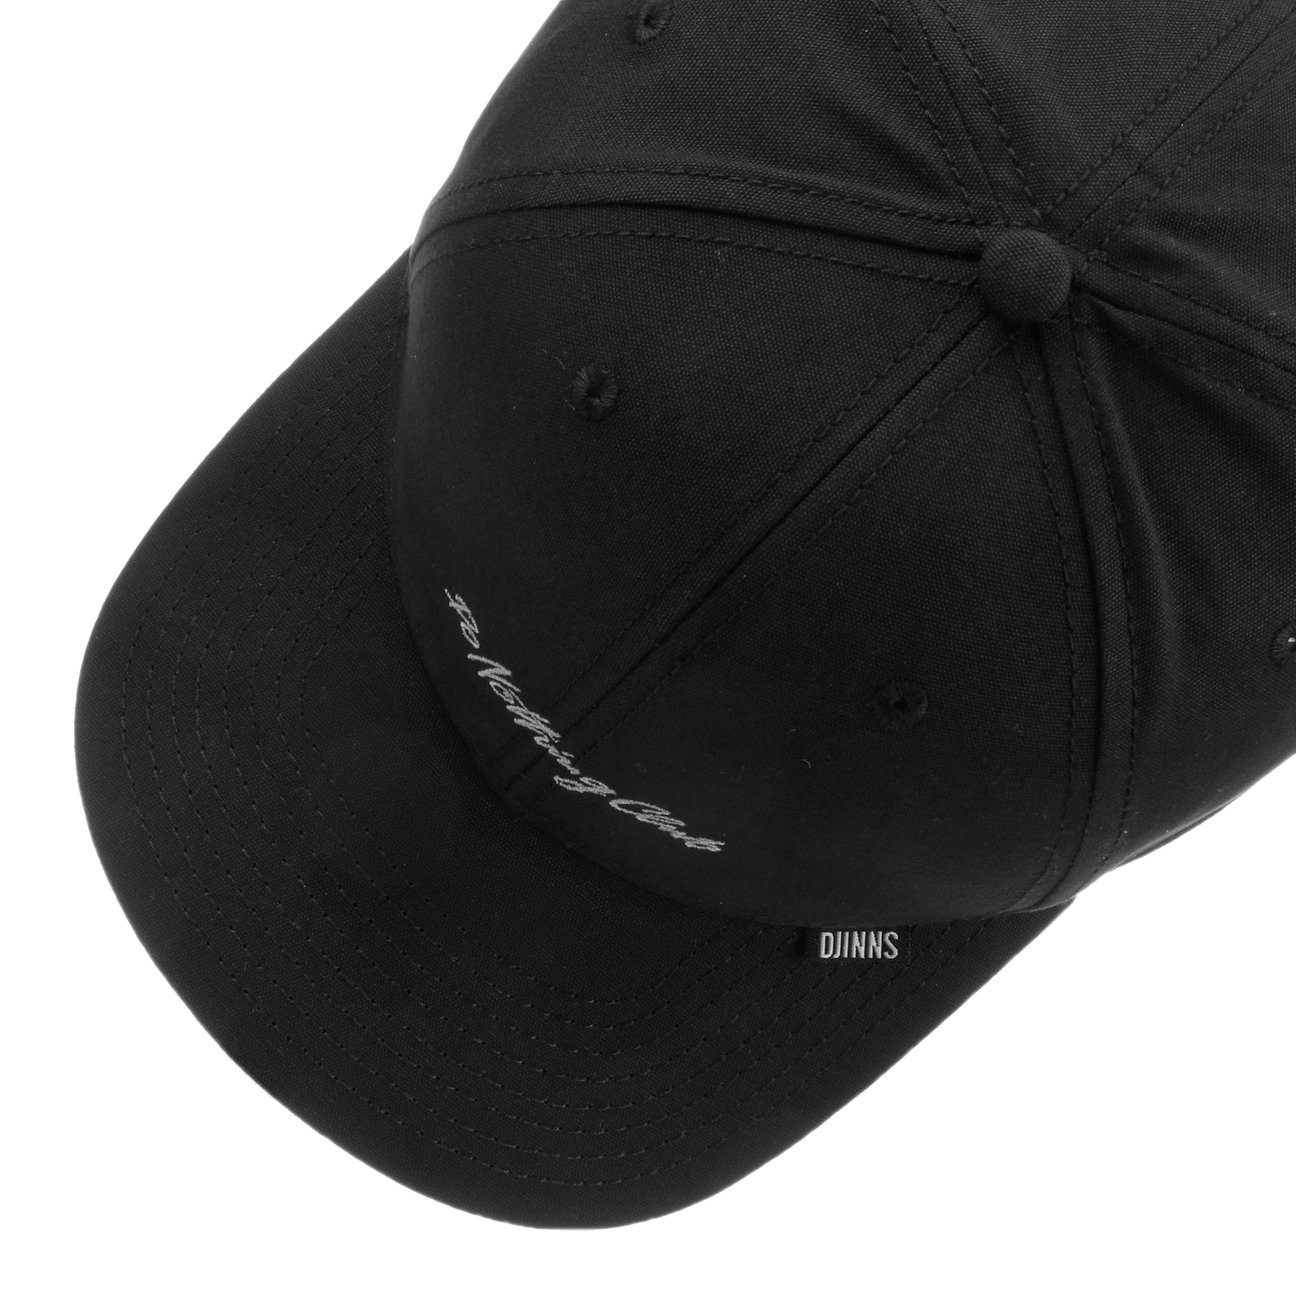 Djinns Baseball Cap (1-St) Snapback schwarz Basecap